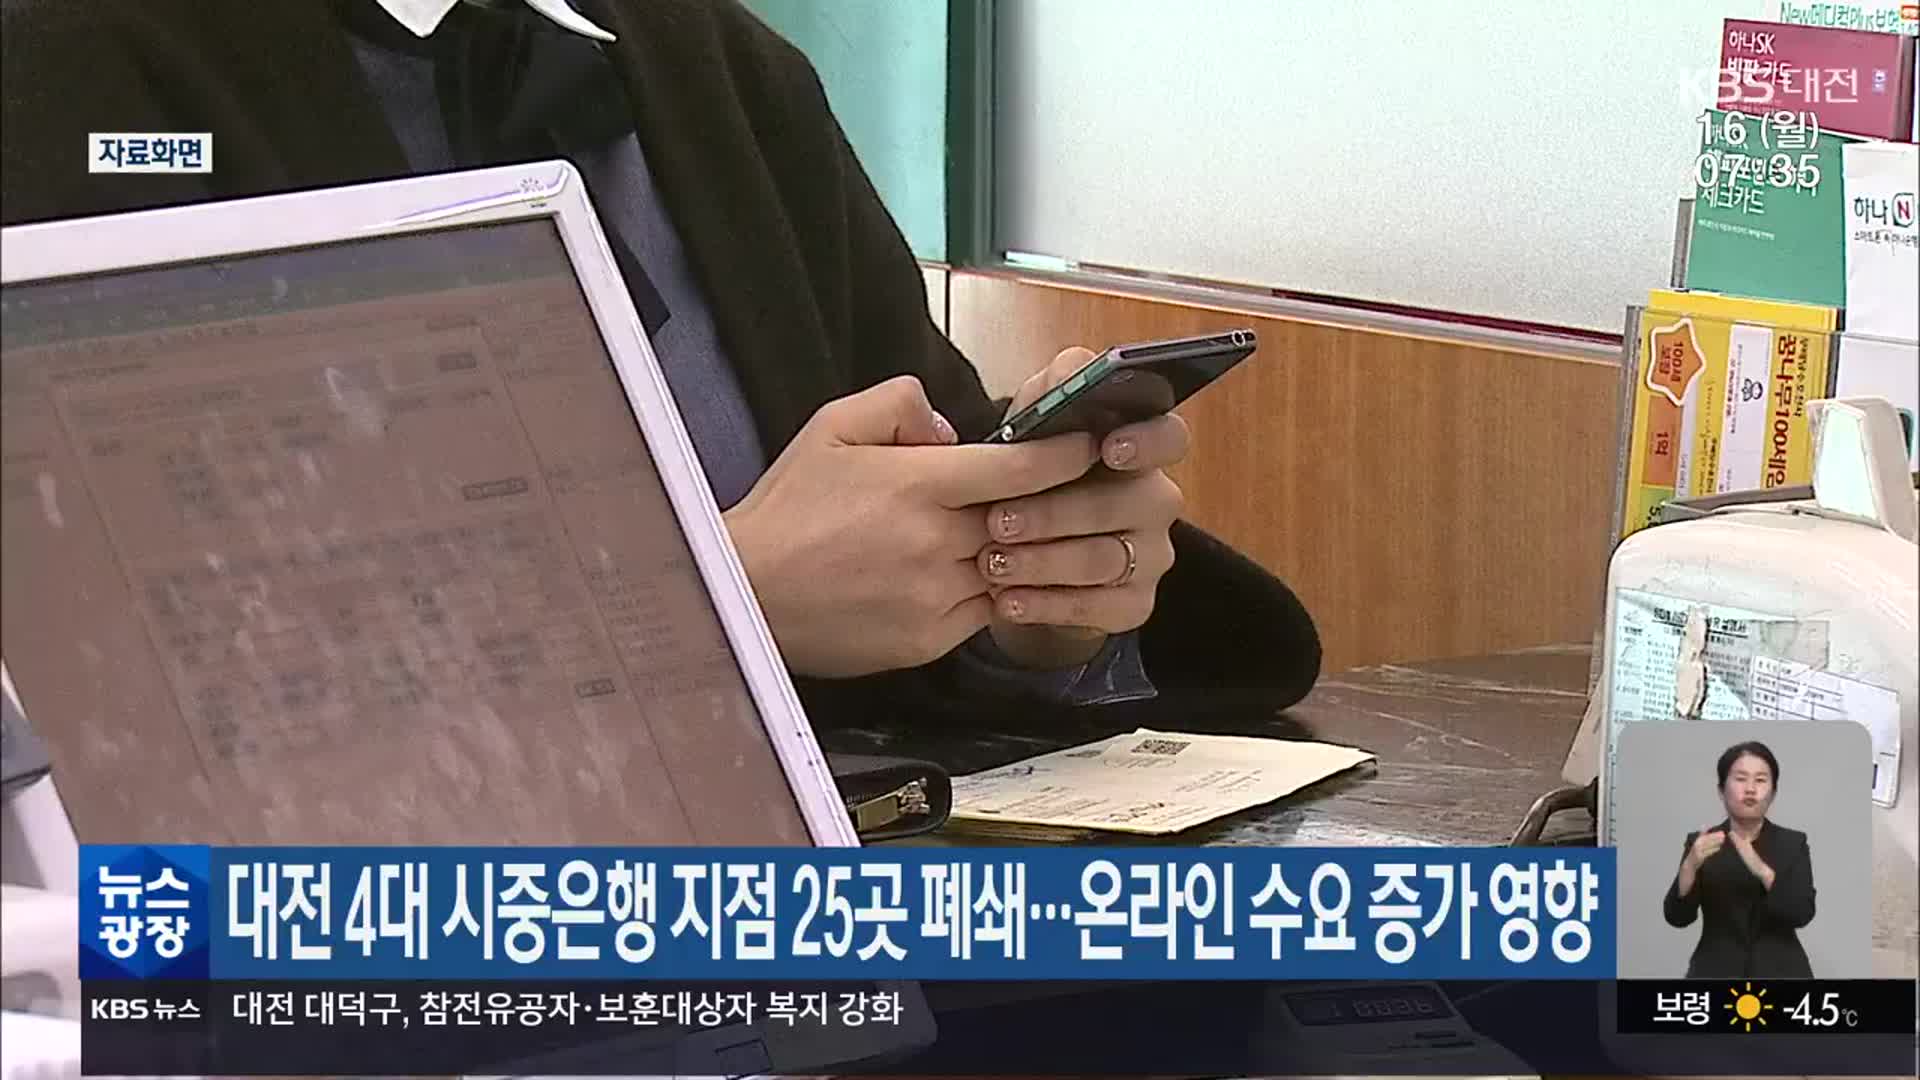 대전 4대 시중은행 지점 25곳 폐쇄…온라인 수요 증가영향